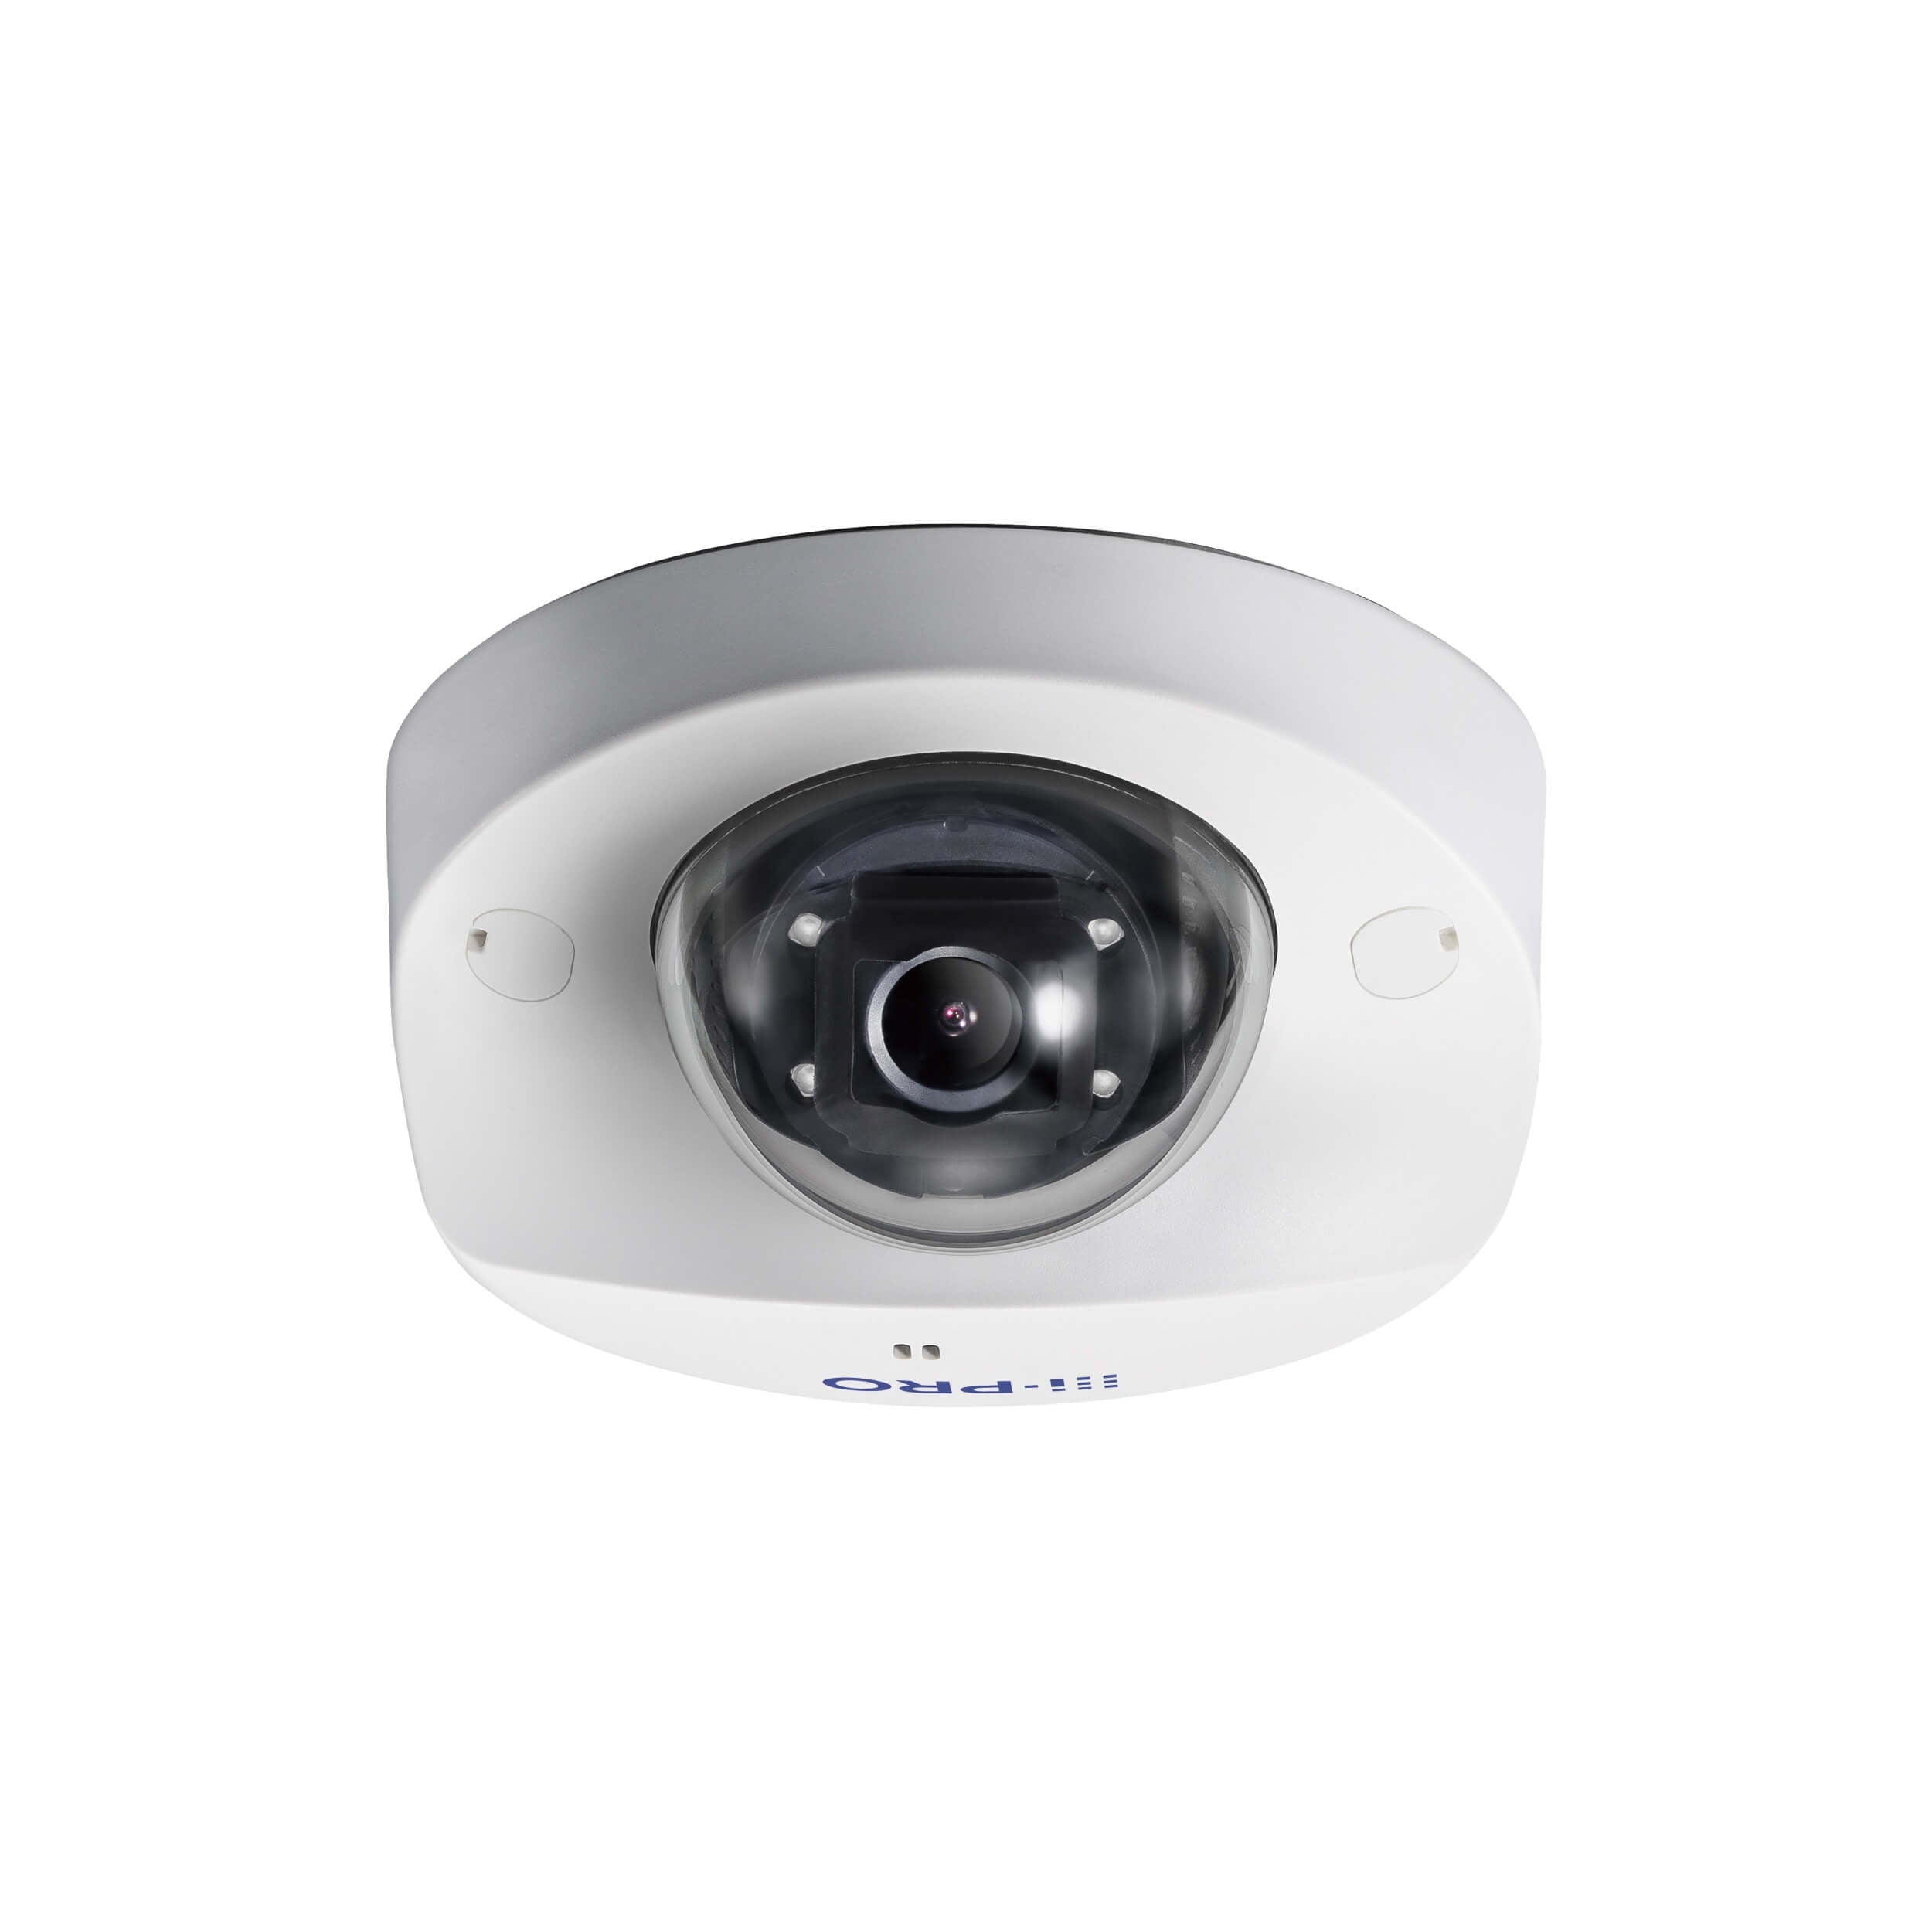 Panasonic WV-S3111L 1.3 Megapixel Indoor Dome Camera, 2.8 mm Lens